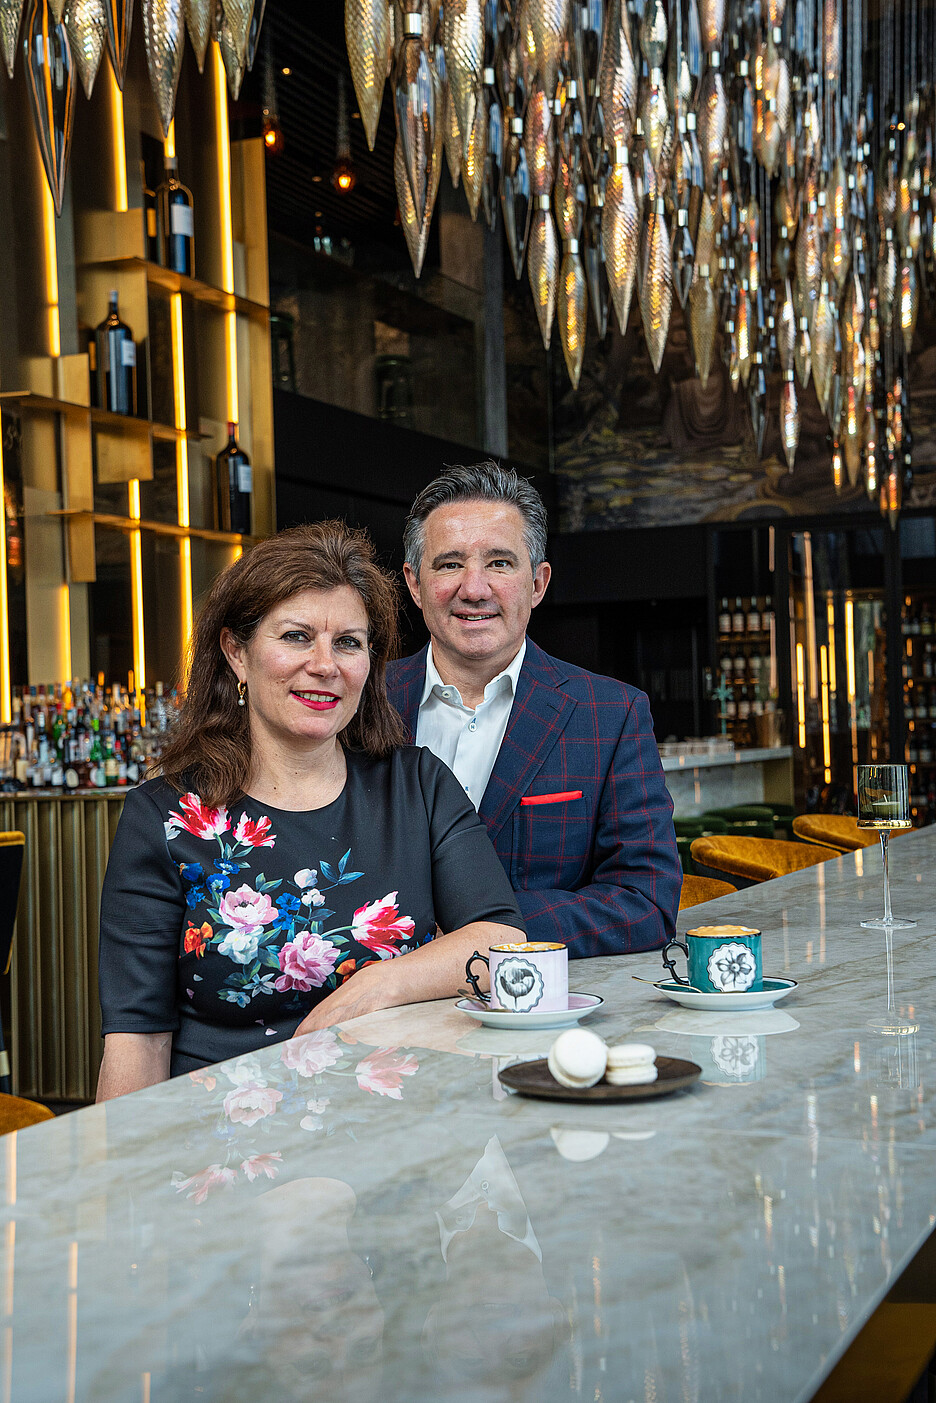 Les époux restaurateurs Daniela et Markus Segmüller vouent une très grande attention à une culture du café sortant de l’ordinaire qu’ils mettent en œuvre dans tous leurs établissements.